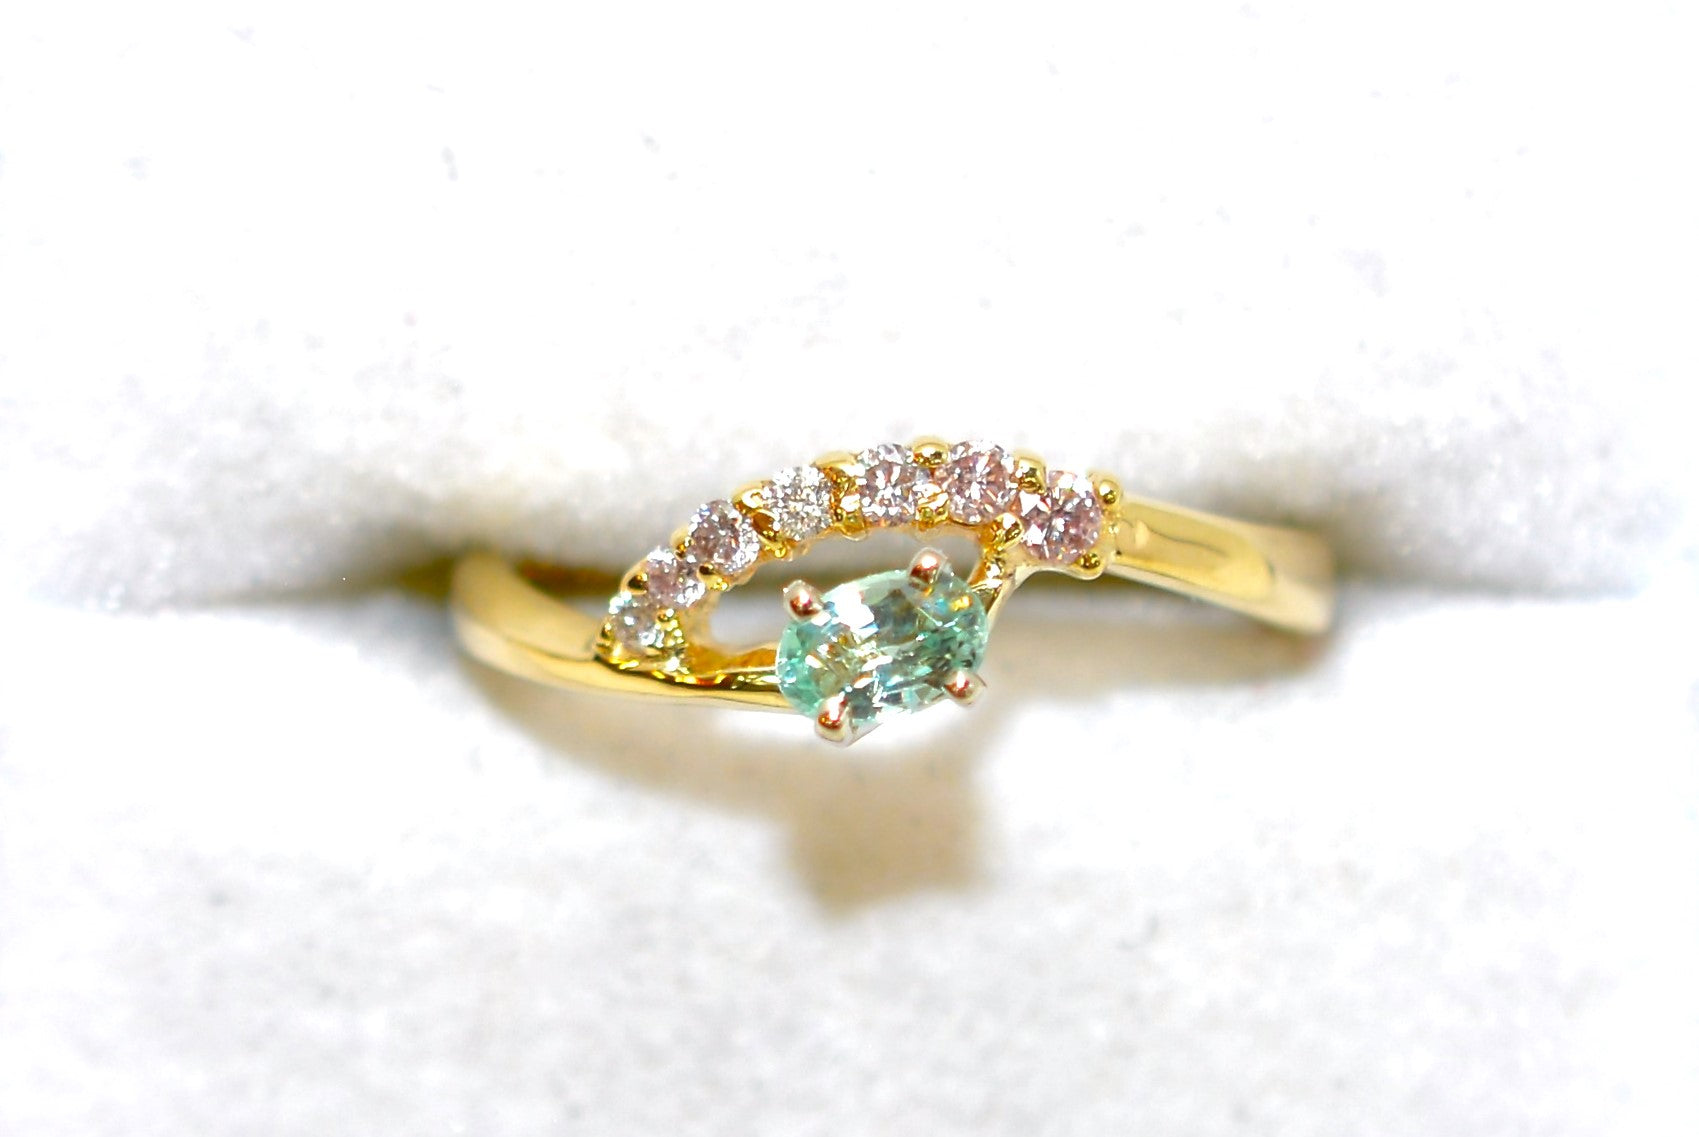 Natural Paraiba Tourmaline & Diamond Ring 14K Solid Gold .41tcw Gemstone Ring Tourmaline Ring Paraiba Ring Birthstone Ring Statement Ring